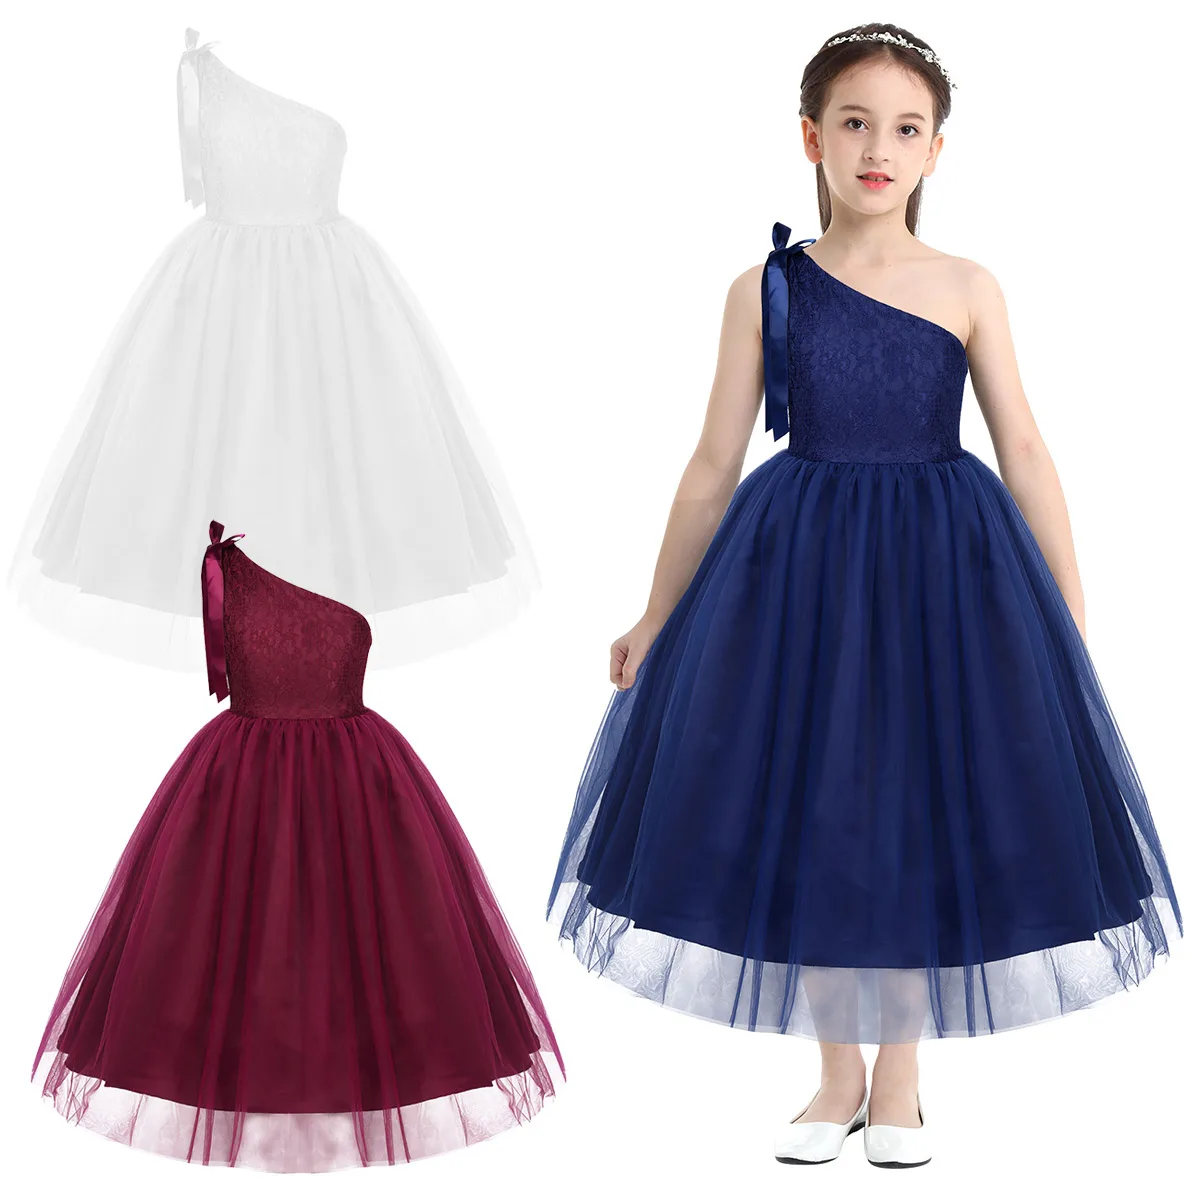 Iiniim/вечерние платья для детей-подростков; платье принцессы на одно плечо с вышивкой и кружевным бантом; Летние праздничные платья для выпускного бала